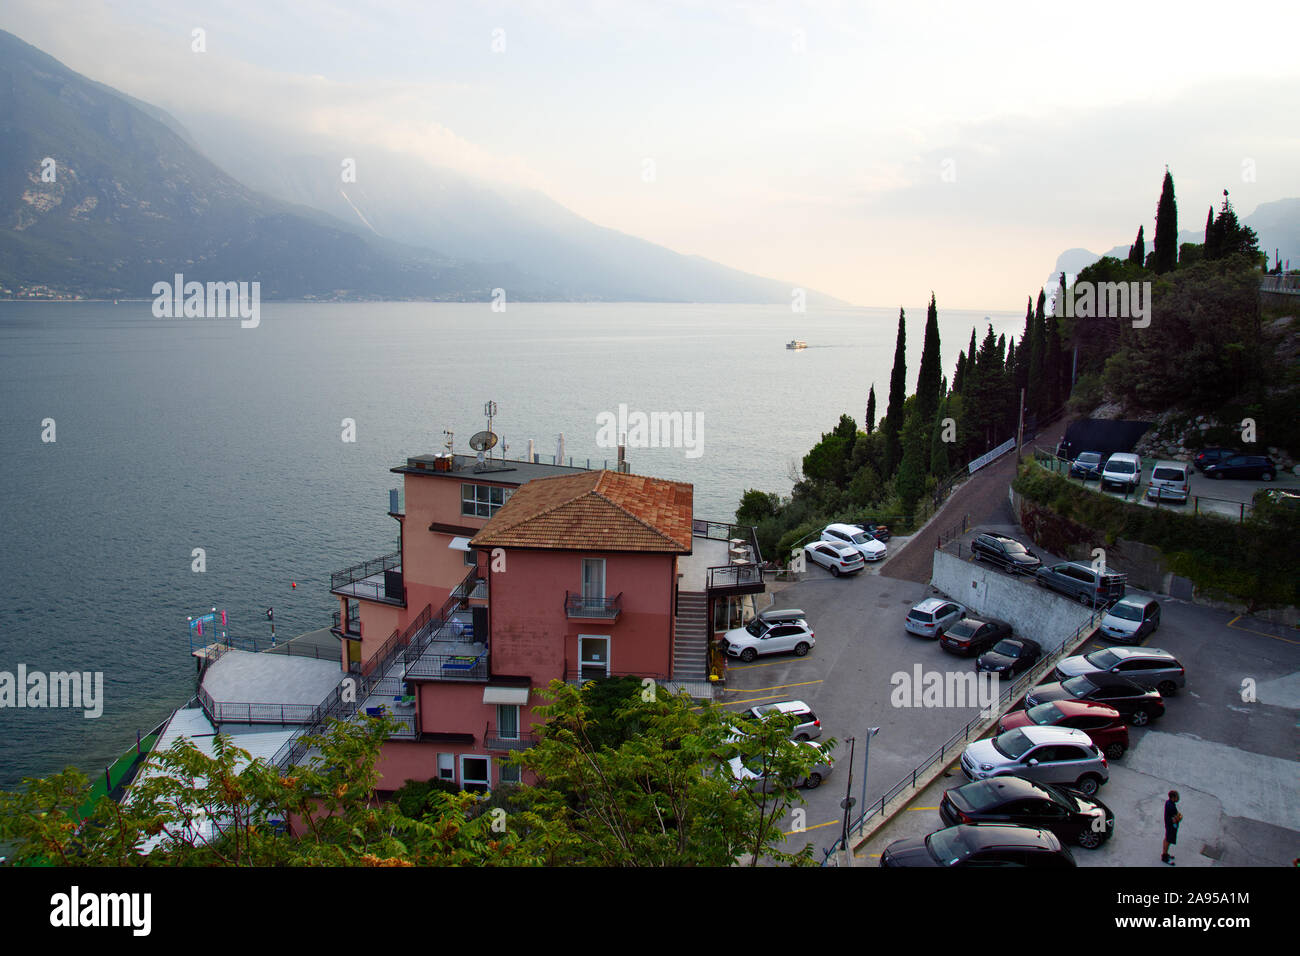 Sept 30, 2019 - Como, Italy: View to the lake of Como, Italy. Stock Photo